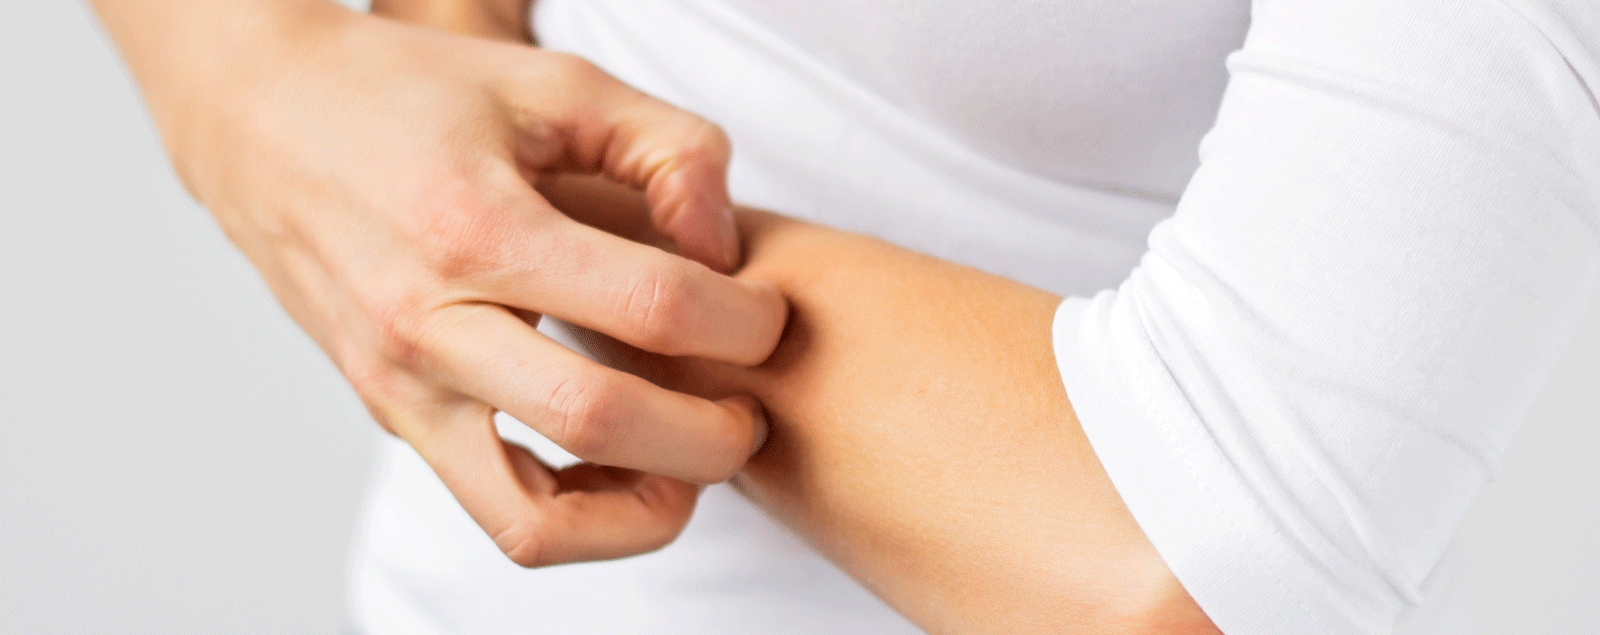 Uzroci i kako liječiti gljivice na koži i noktima